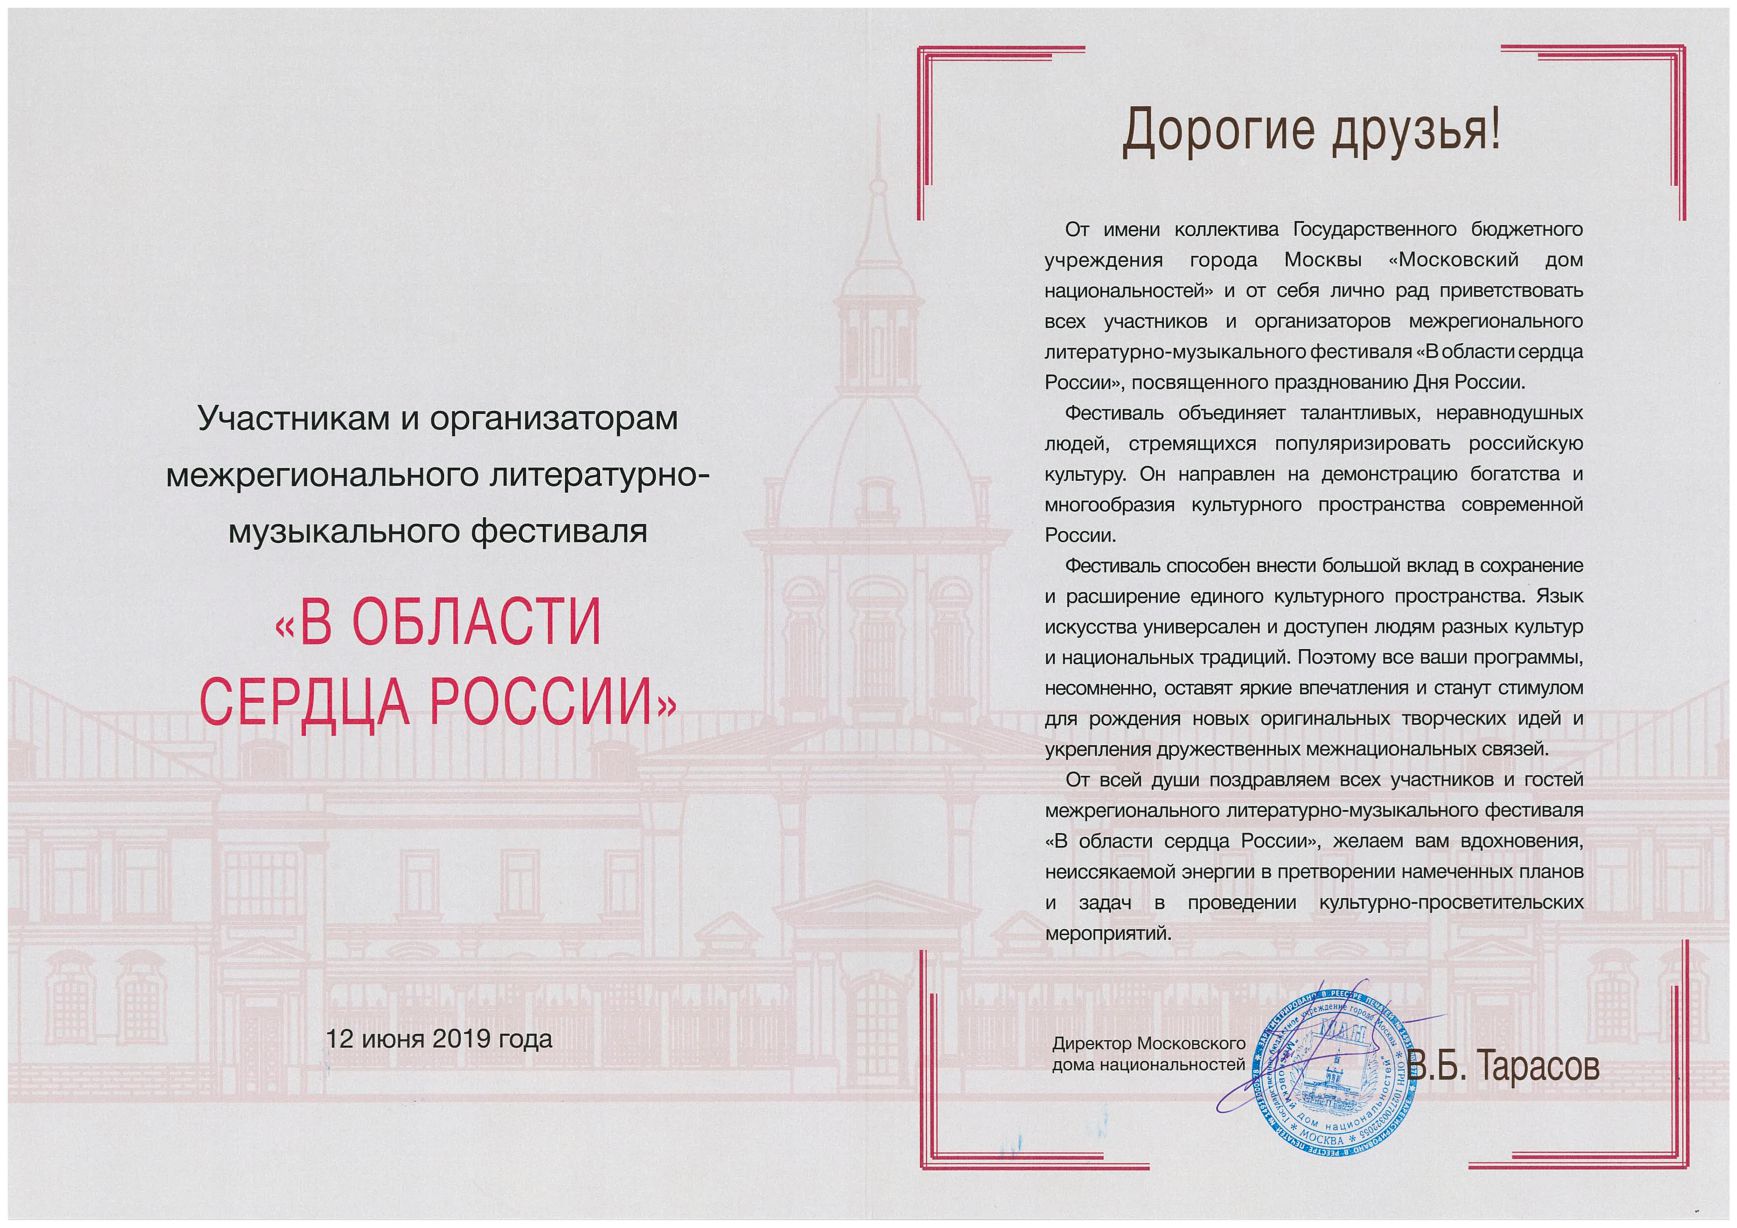 Приветственный адрес Московского дома национальностей